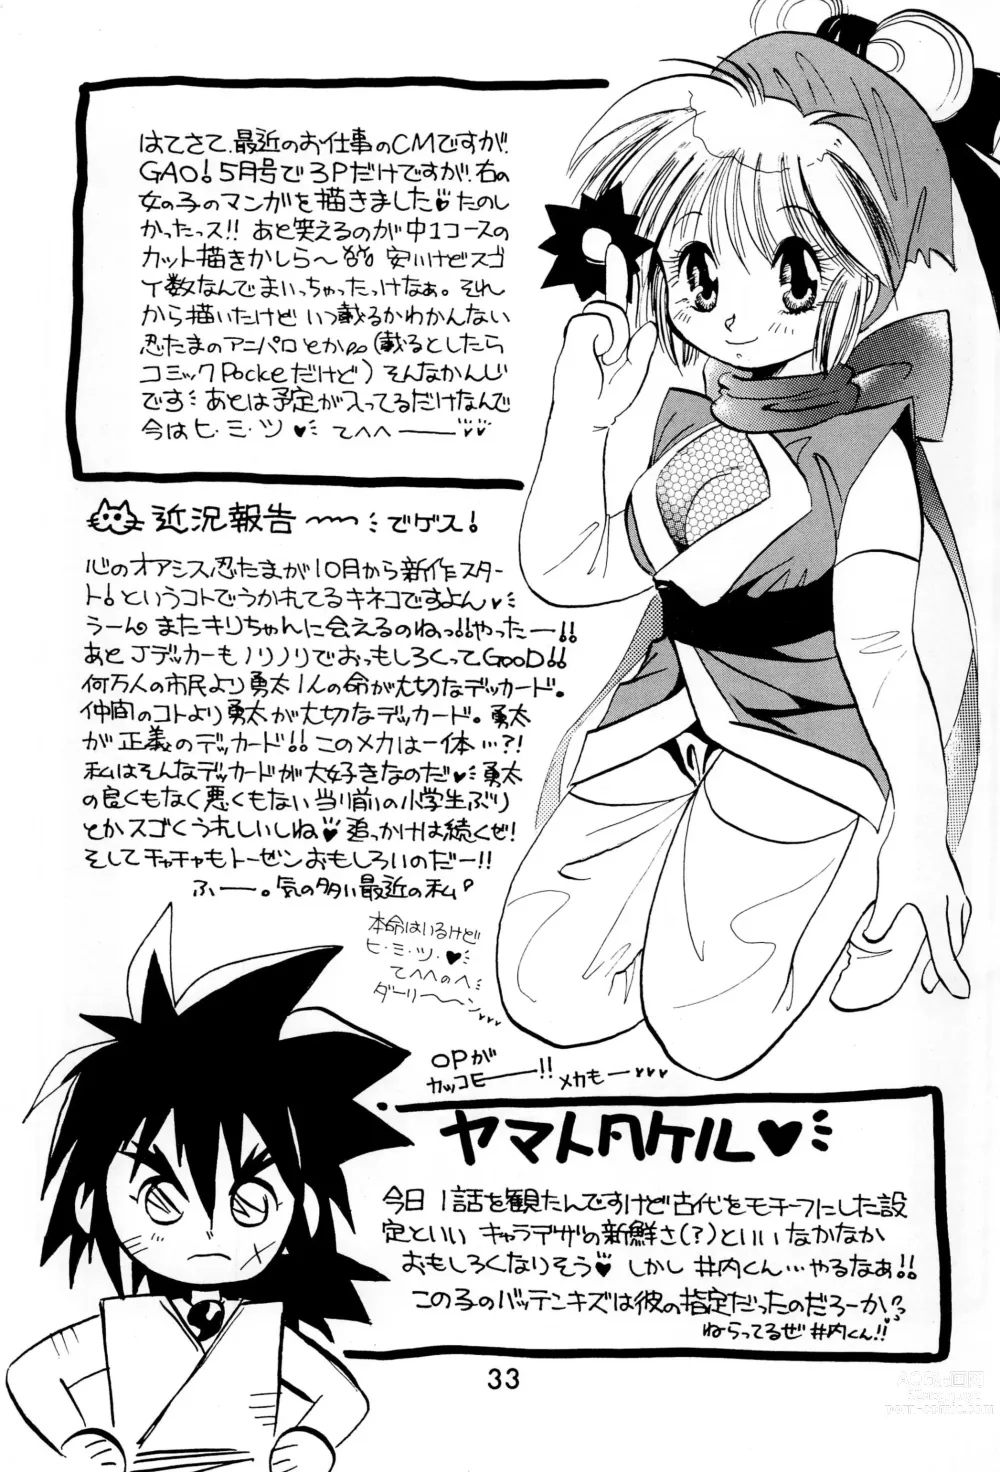 Page 33 of doujinshi Uwasa no Himeko